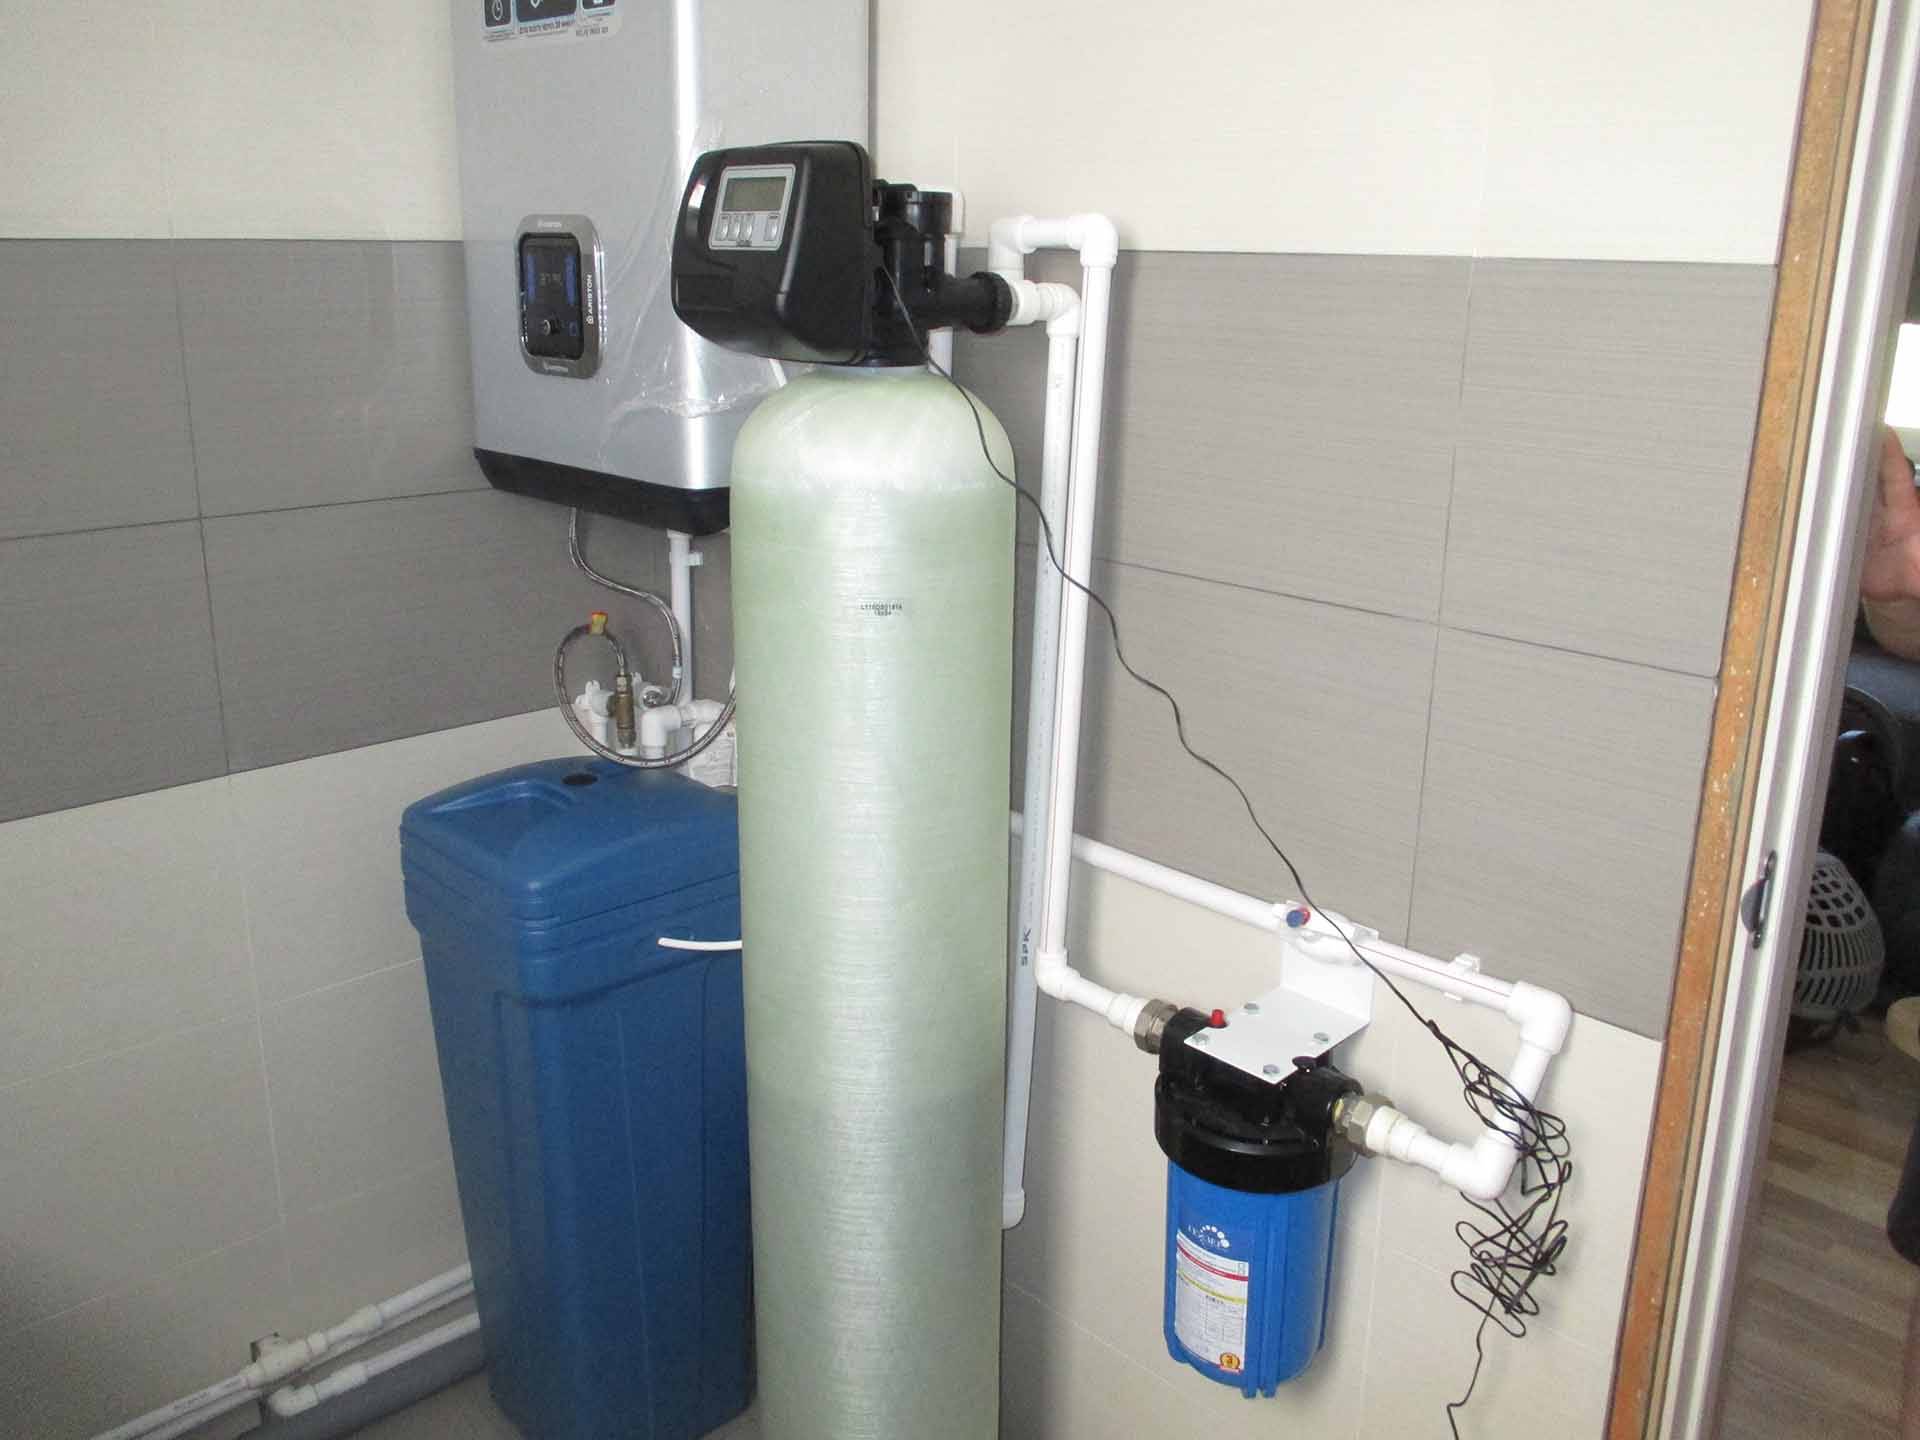 Фильтр для воды из колодца – залог безопасности и здоровья дачников